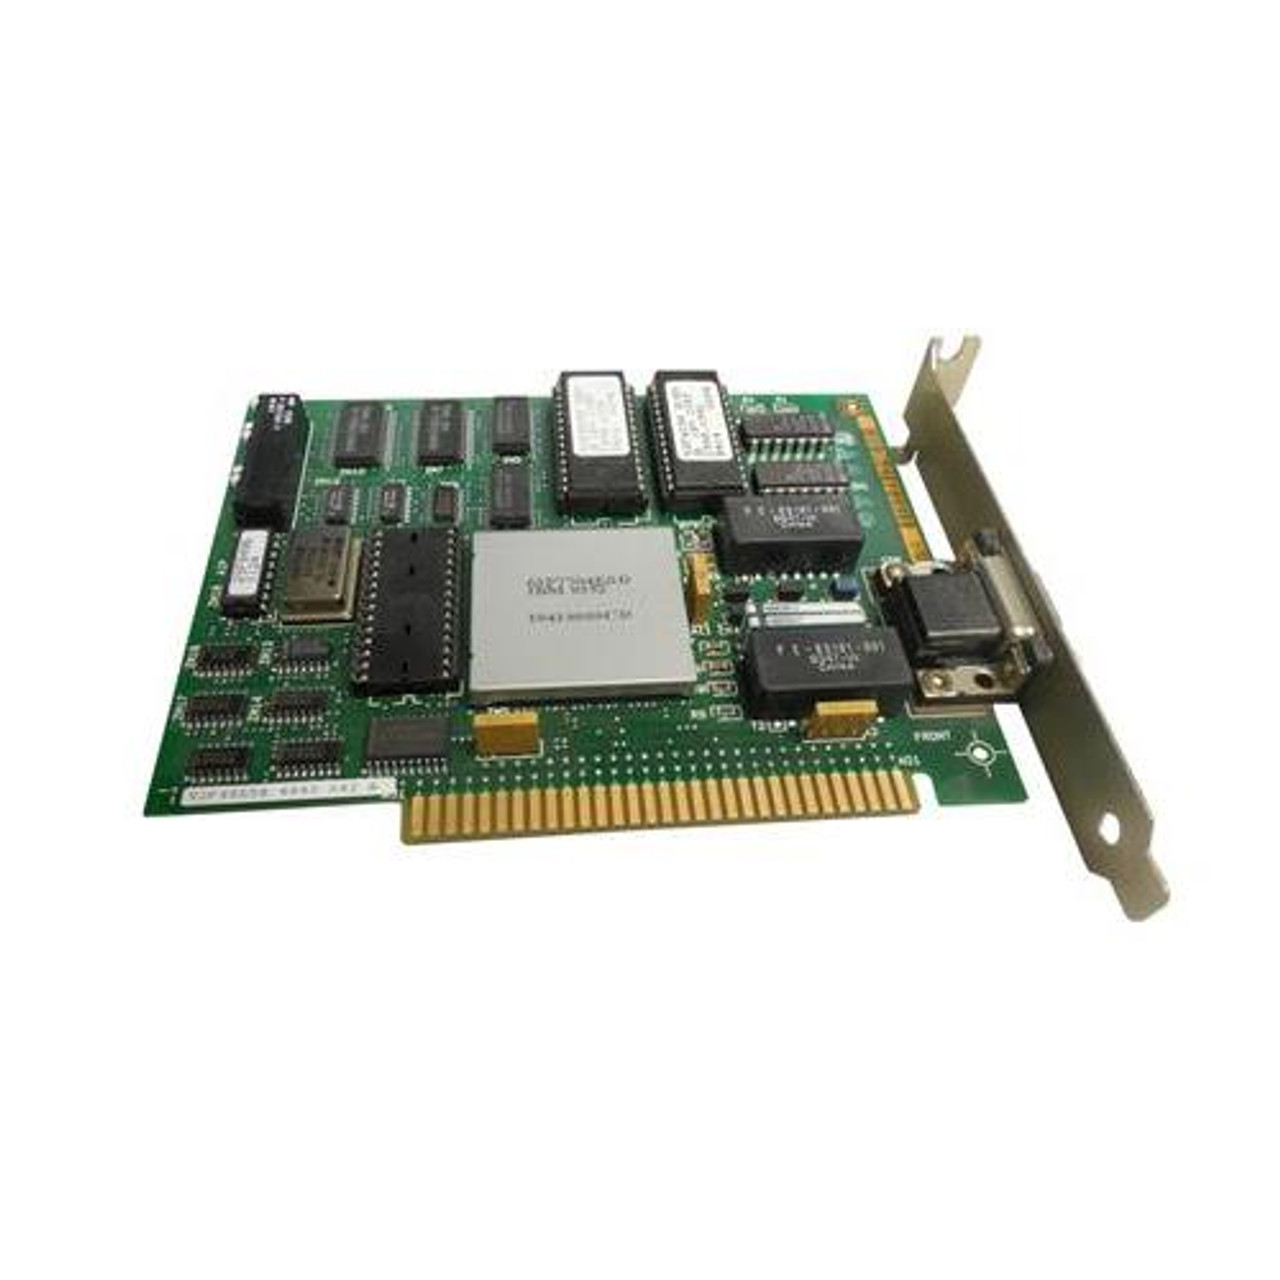 9406-2847 IBM PCI I/O Control Card for 9406 eServer